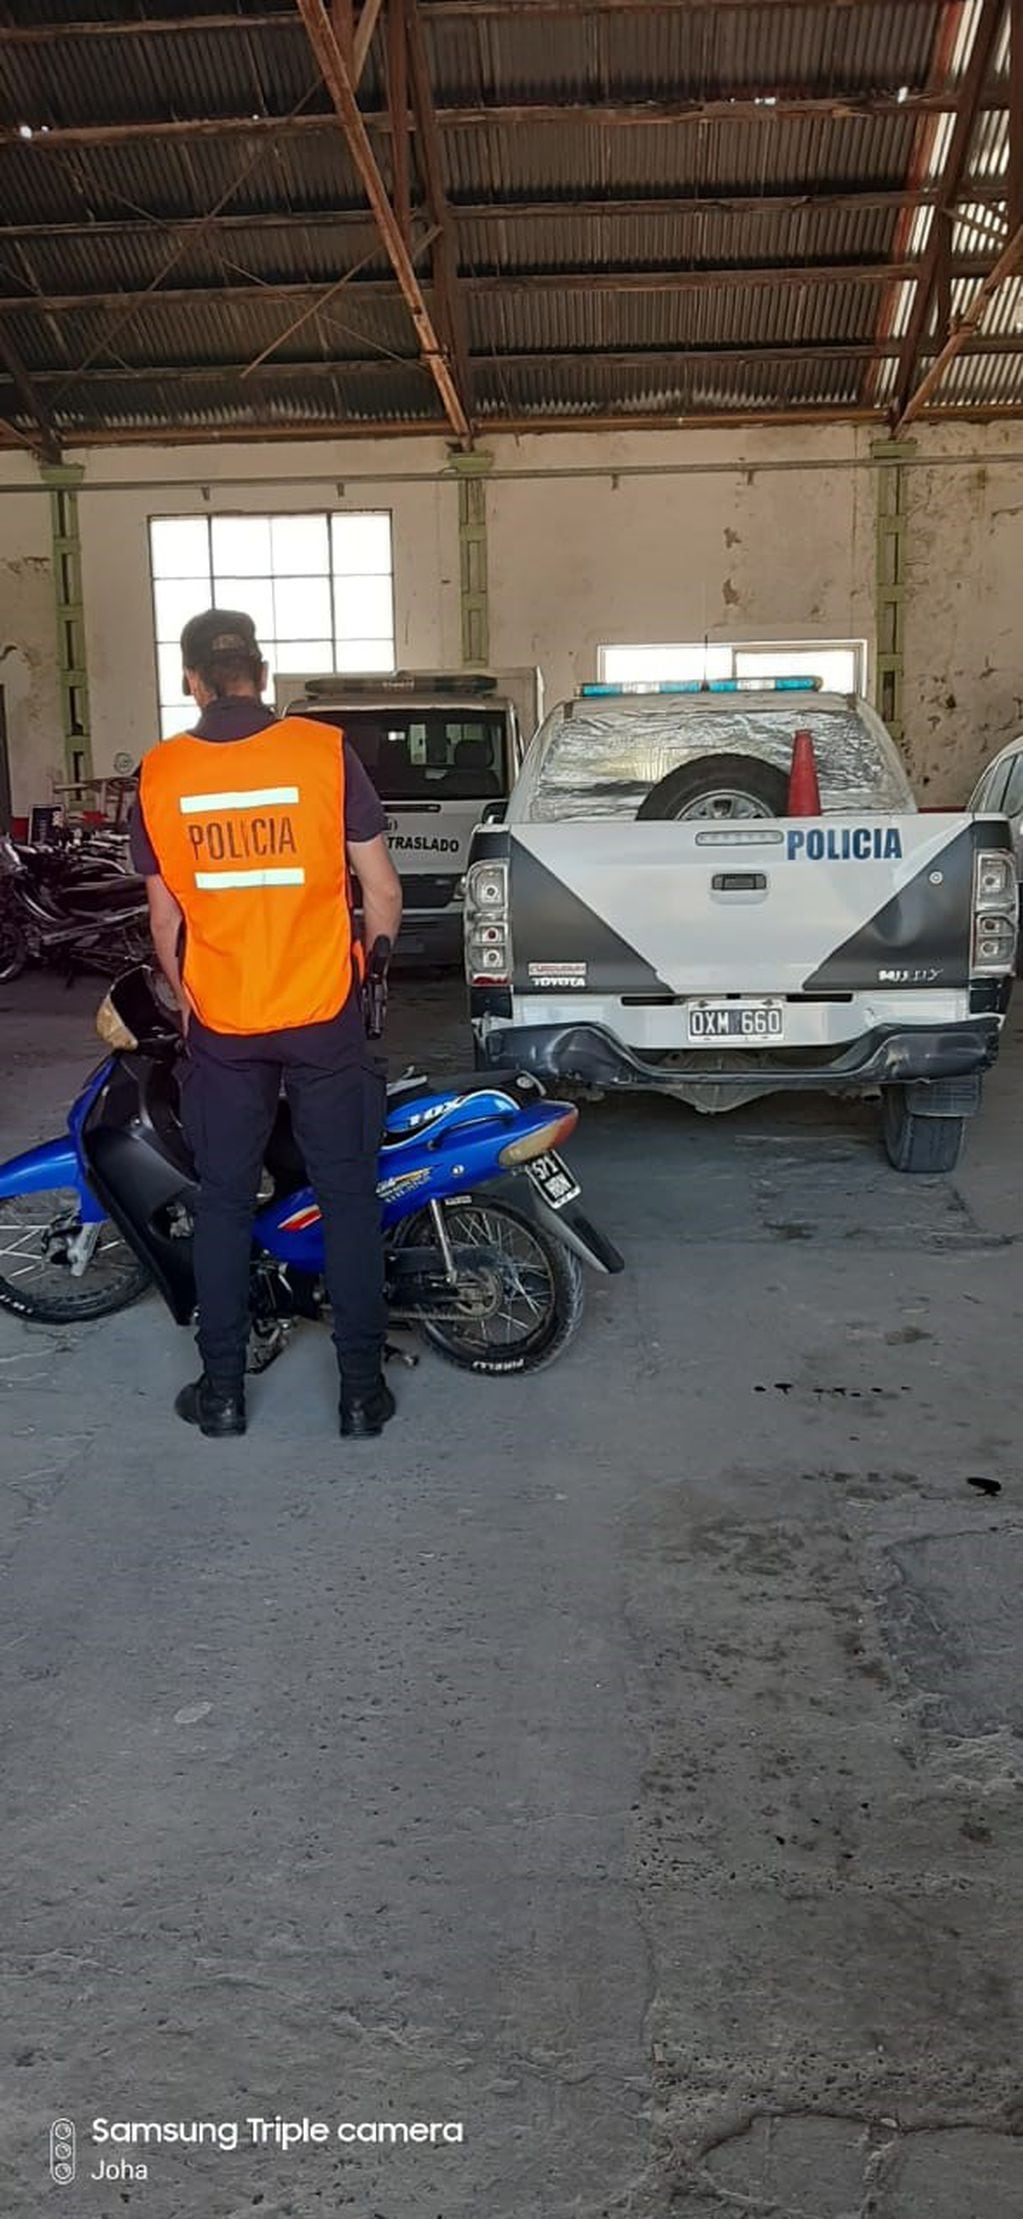 Moto secuestrada en operativo policial (policía)